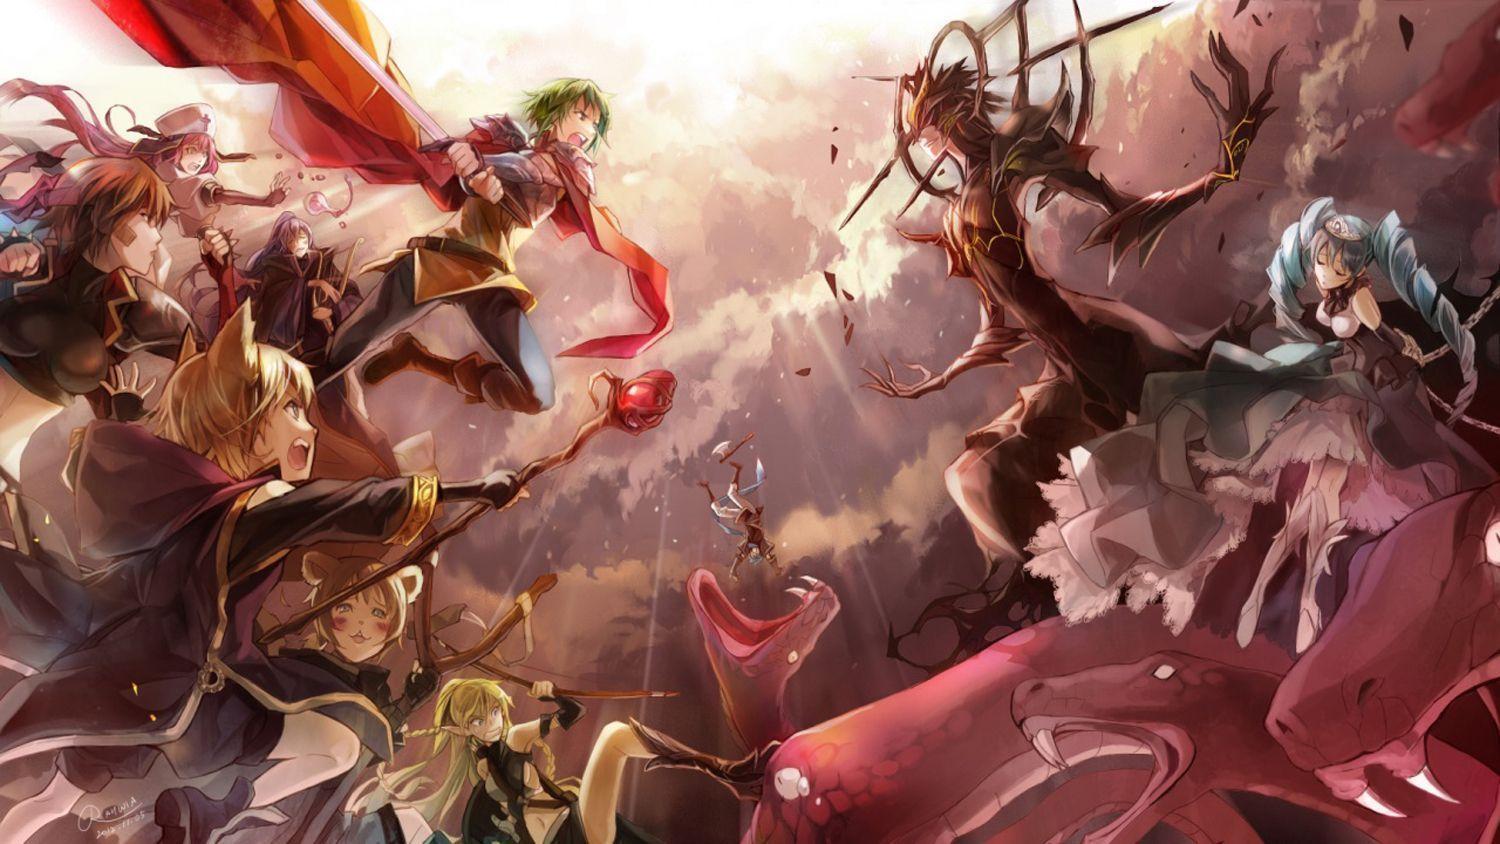 Anime Battle Background